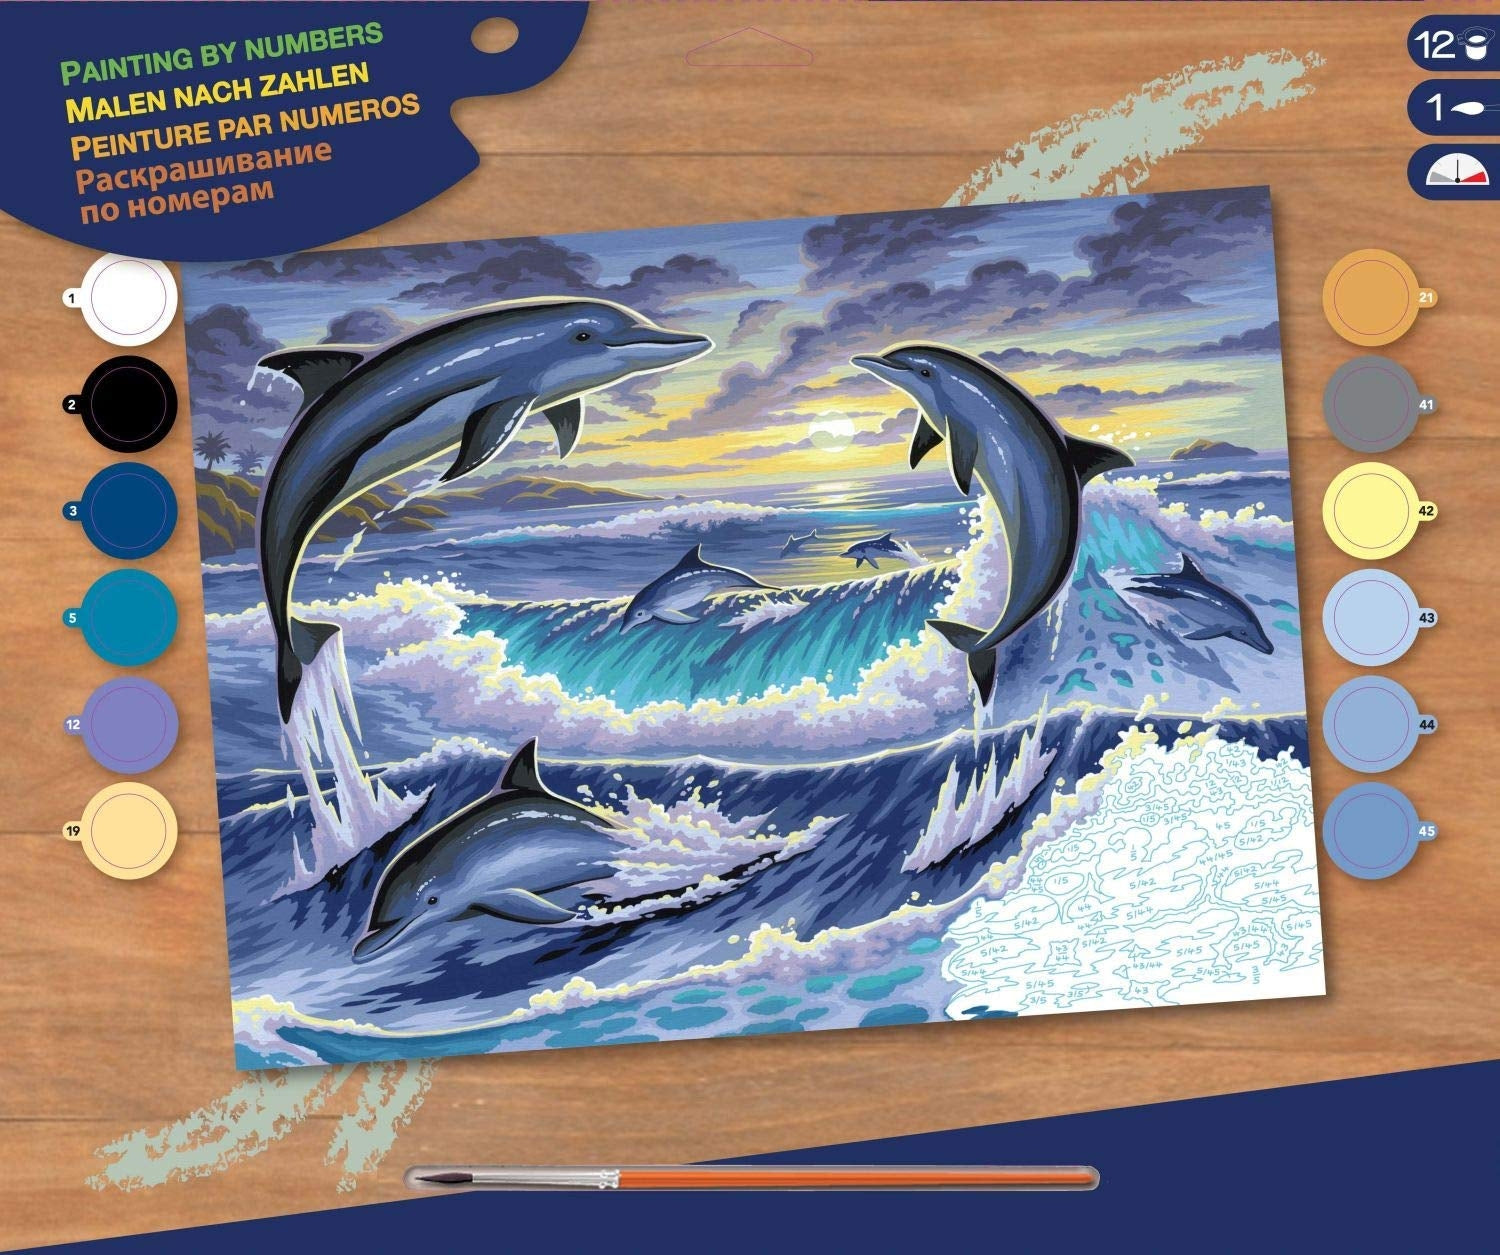 KSG - Grande peinture par nombre - Dolphin Sunrise